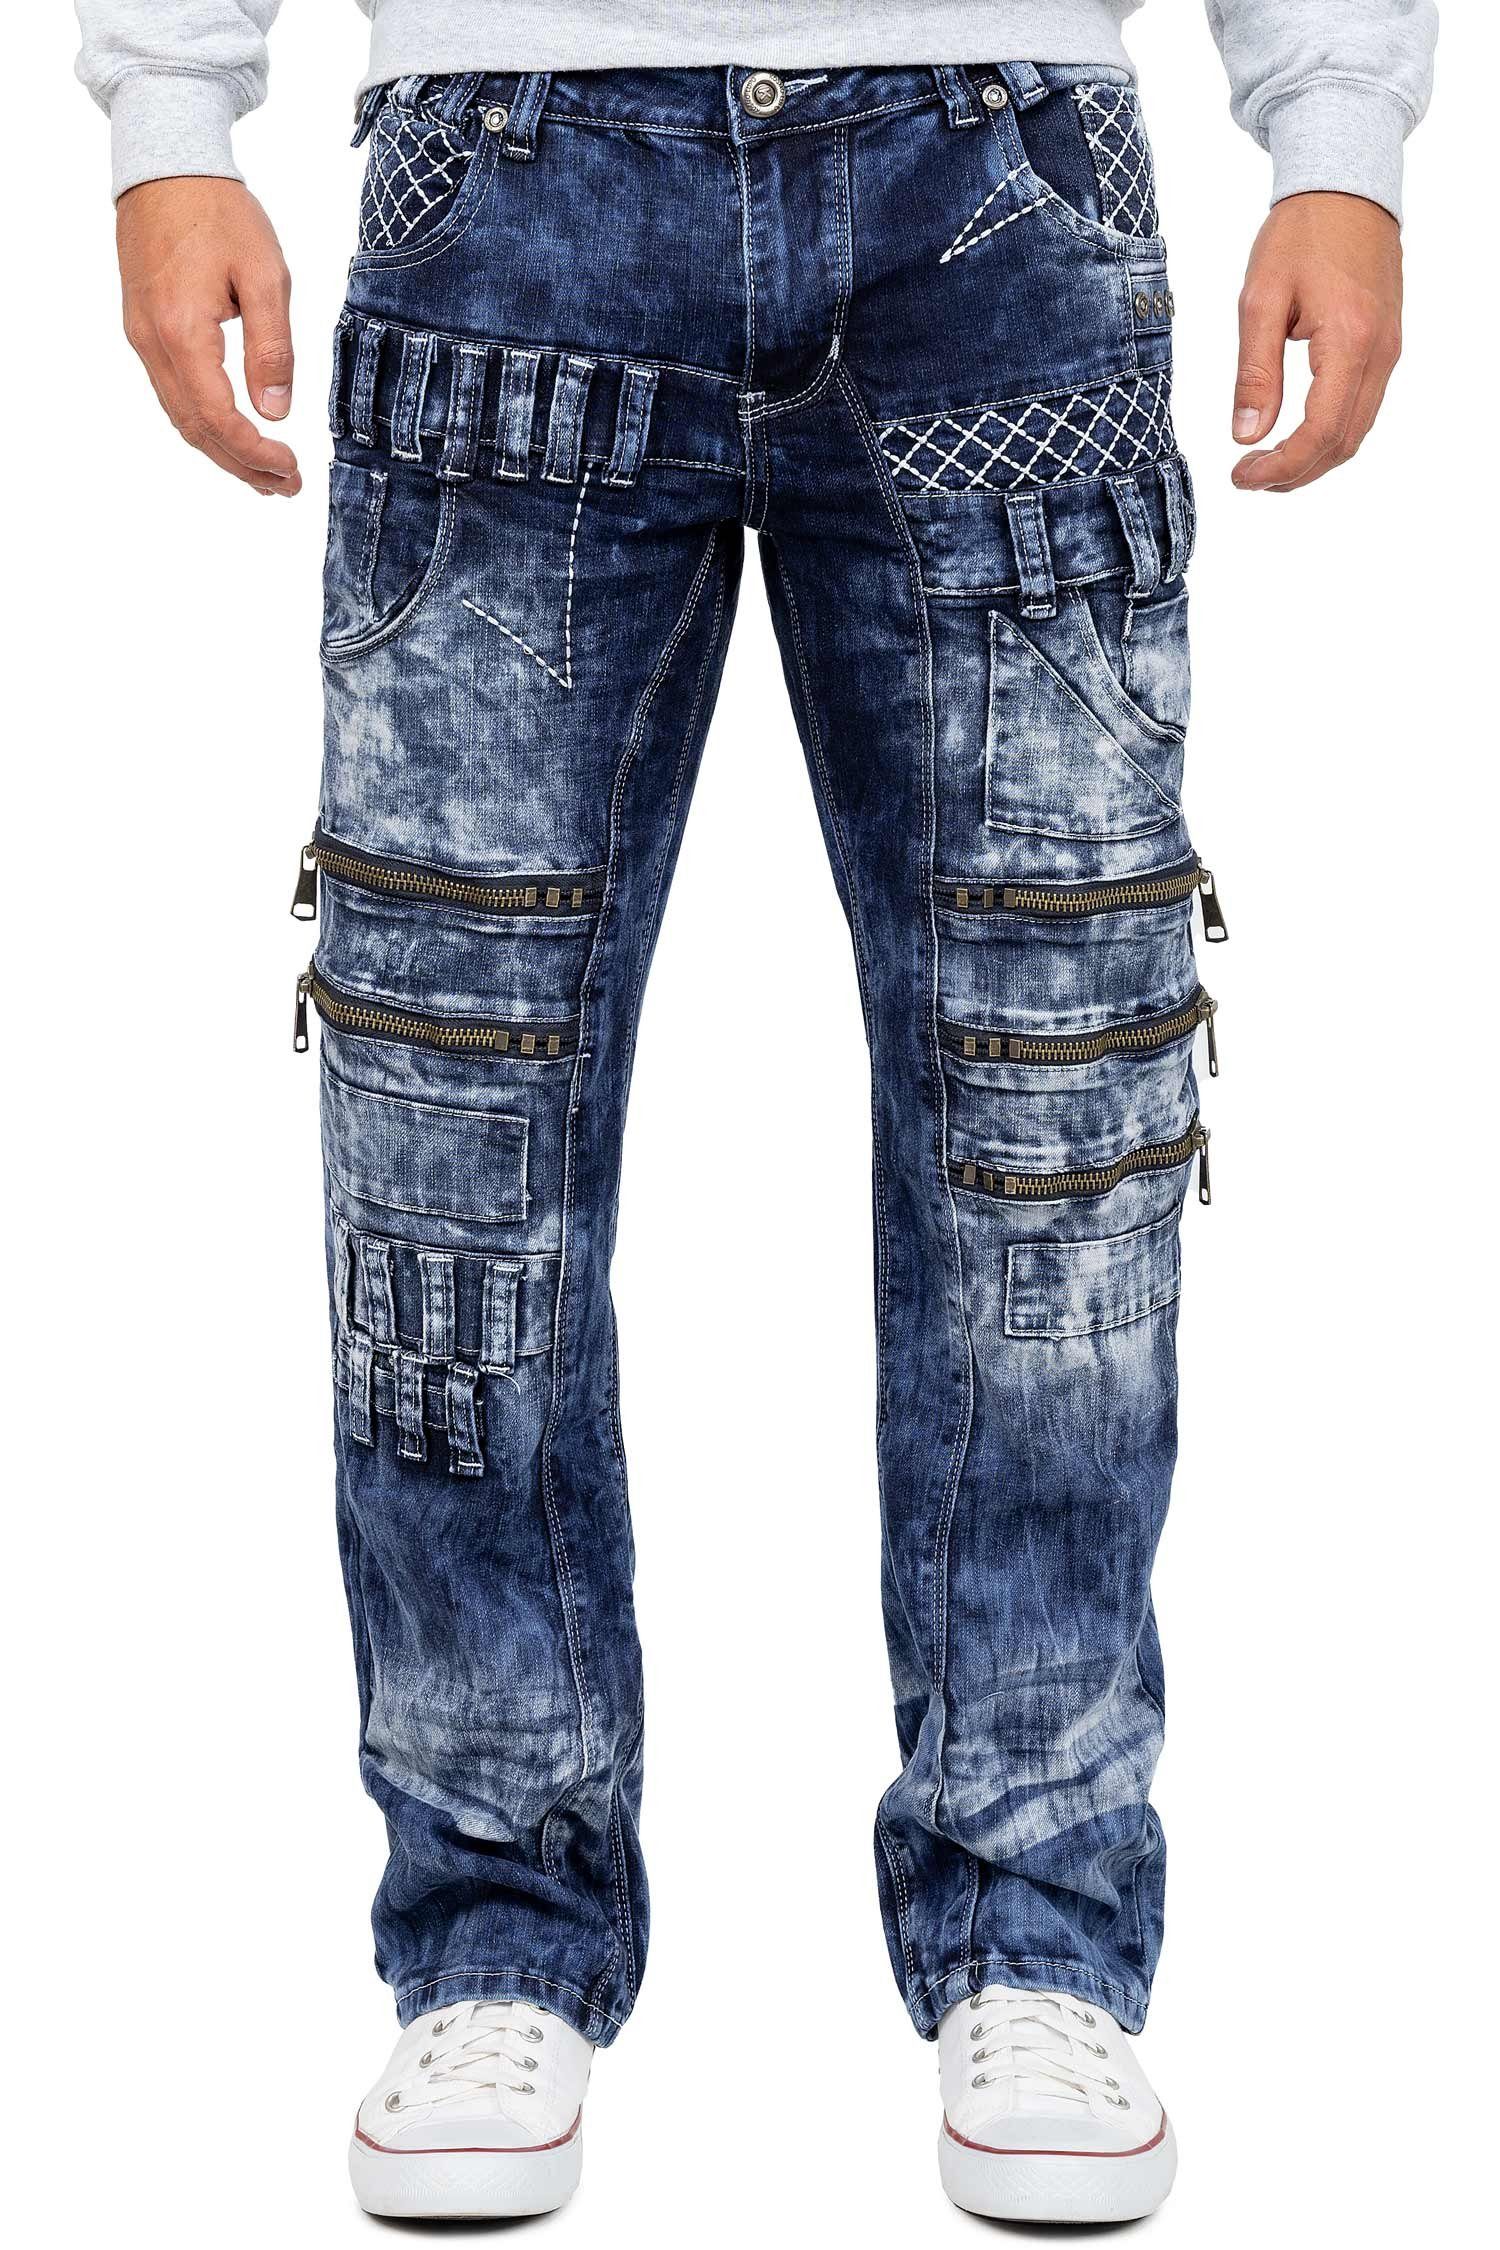 Kosmo Lupo 5-Pocket-Jeans Auffällige Herren Hose BA-KM8006 mit Aufgesetzten Applikationen blau